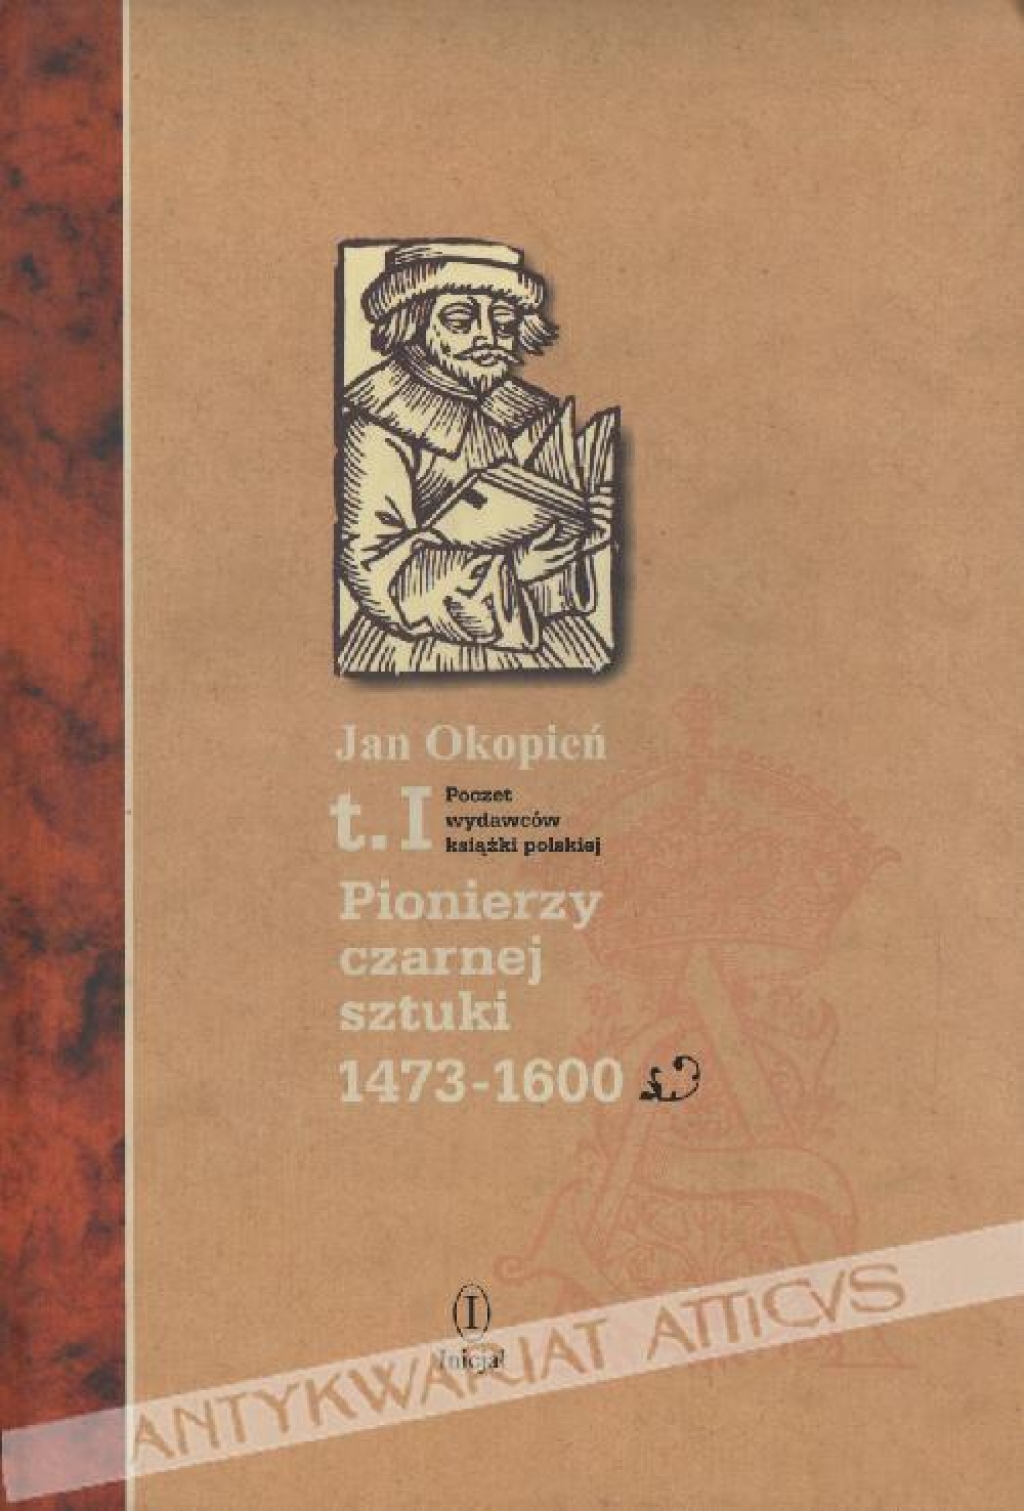 Poczet wydawców książki polskiej, t. IPionierzy czarnej sztuki 1473-1600